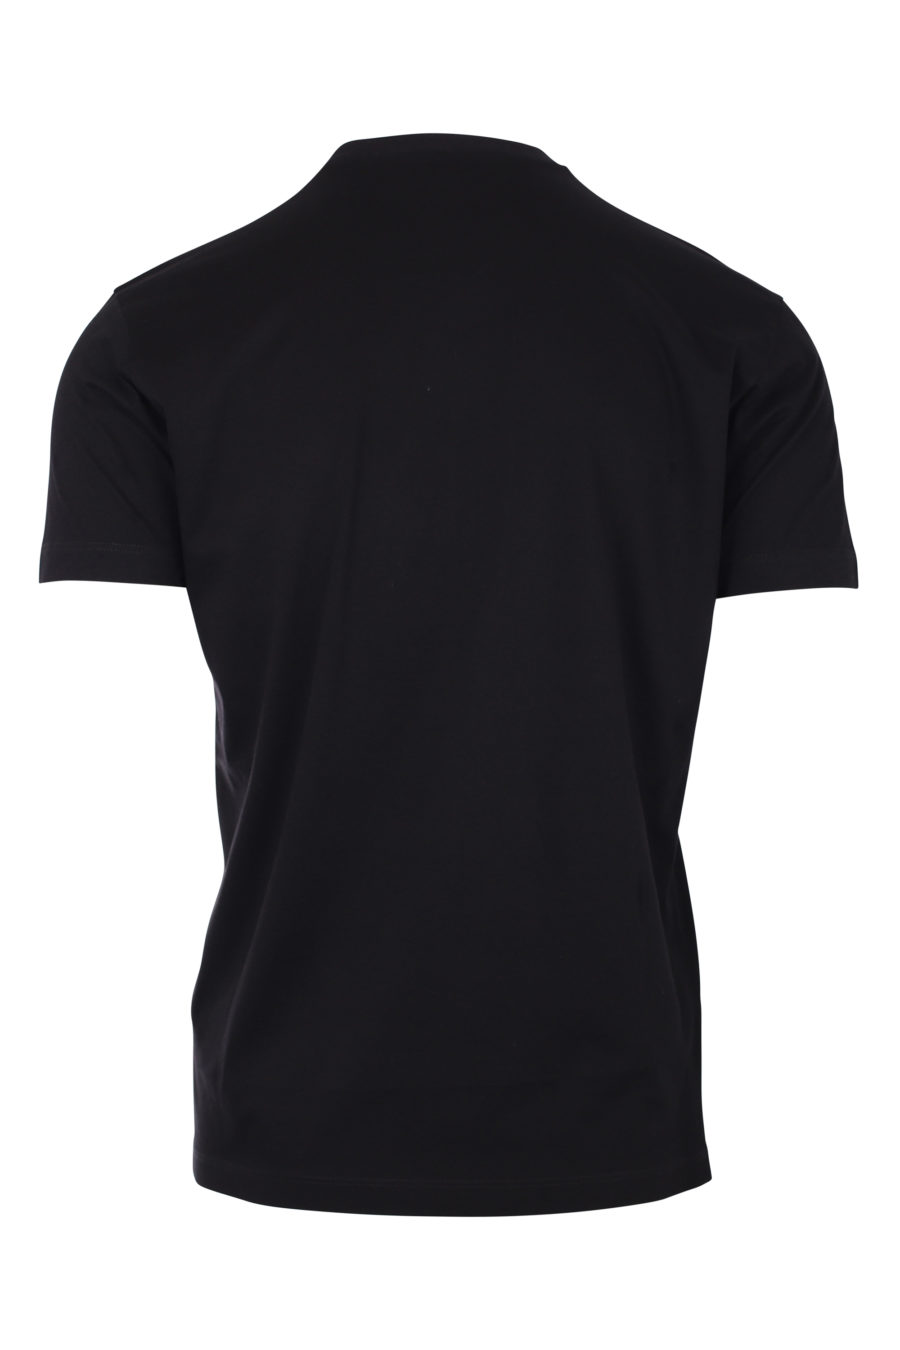 T-Shirt schwarz mit weißem "Malerei"-Logo - IMG 9791